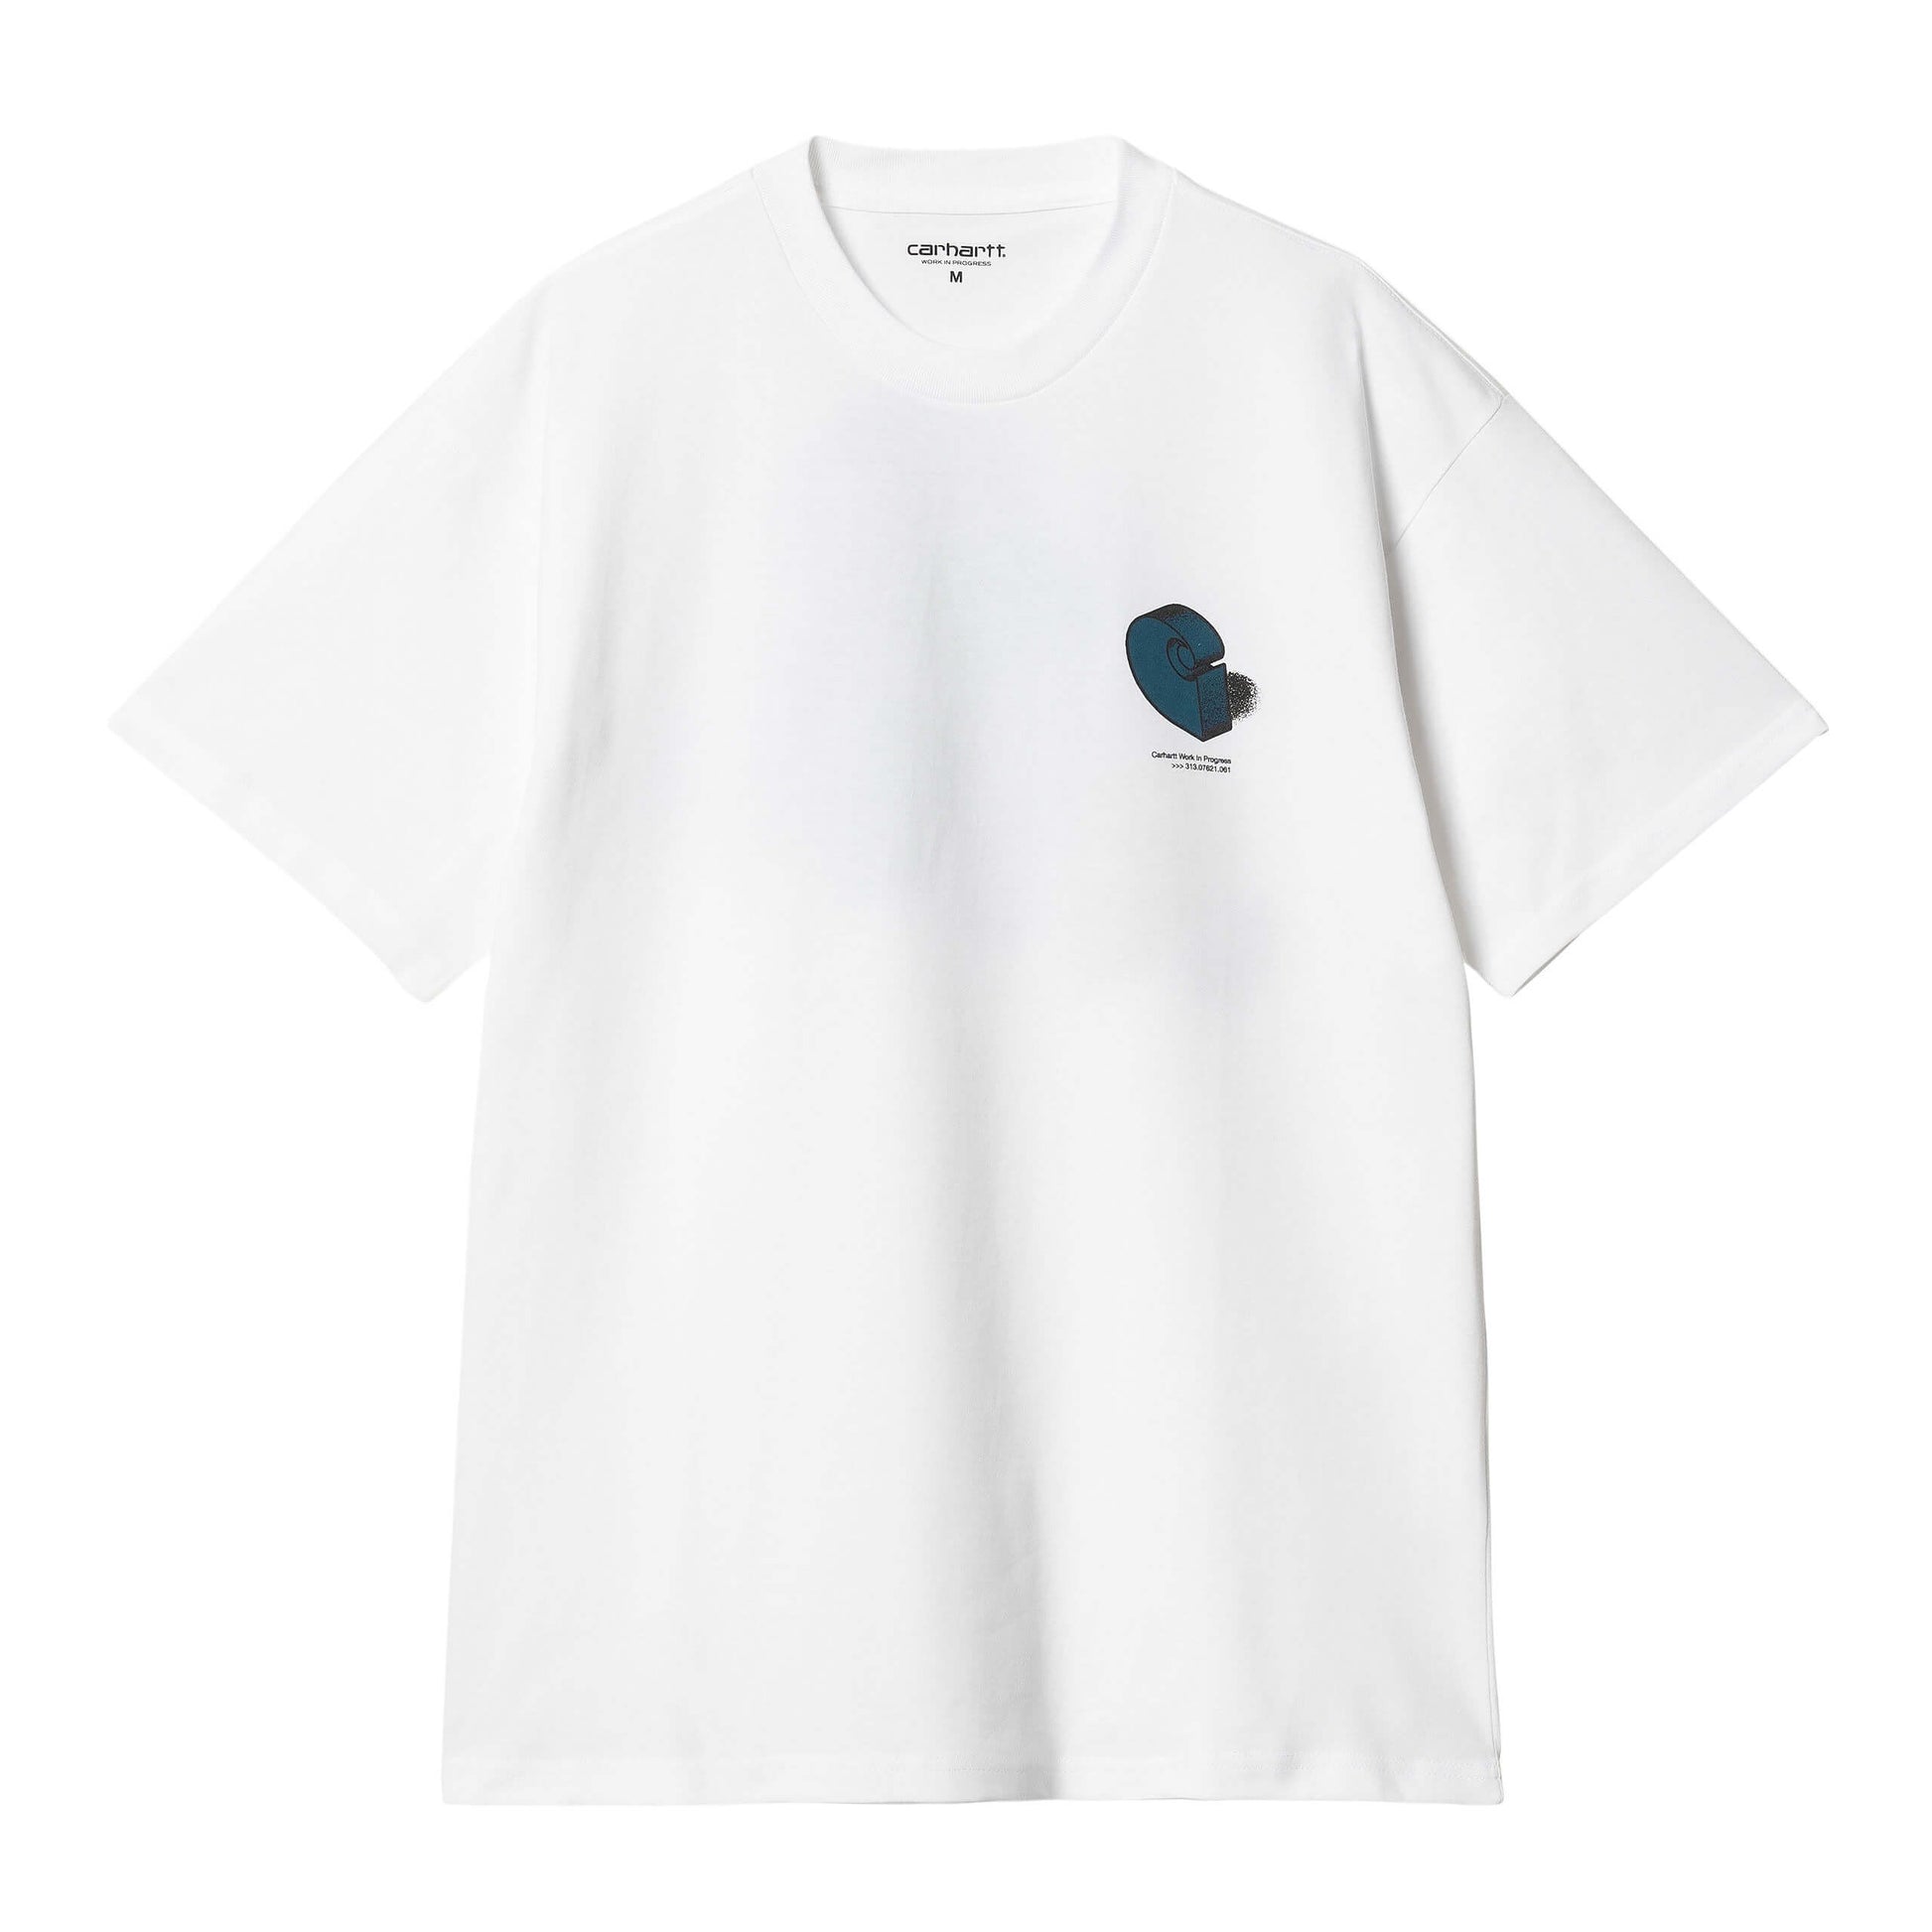 carhartt-wip-s-s-diagram-c-t-shirt-white